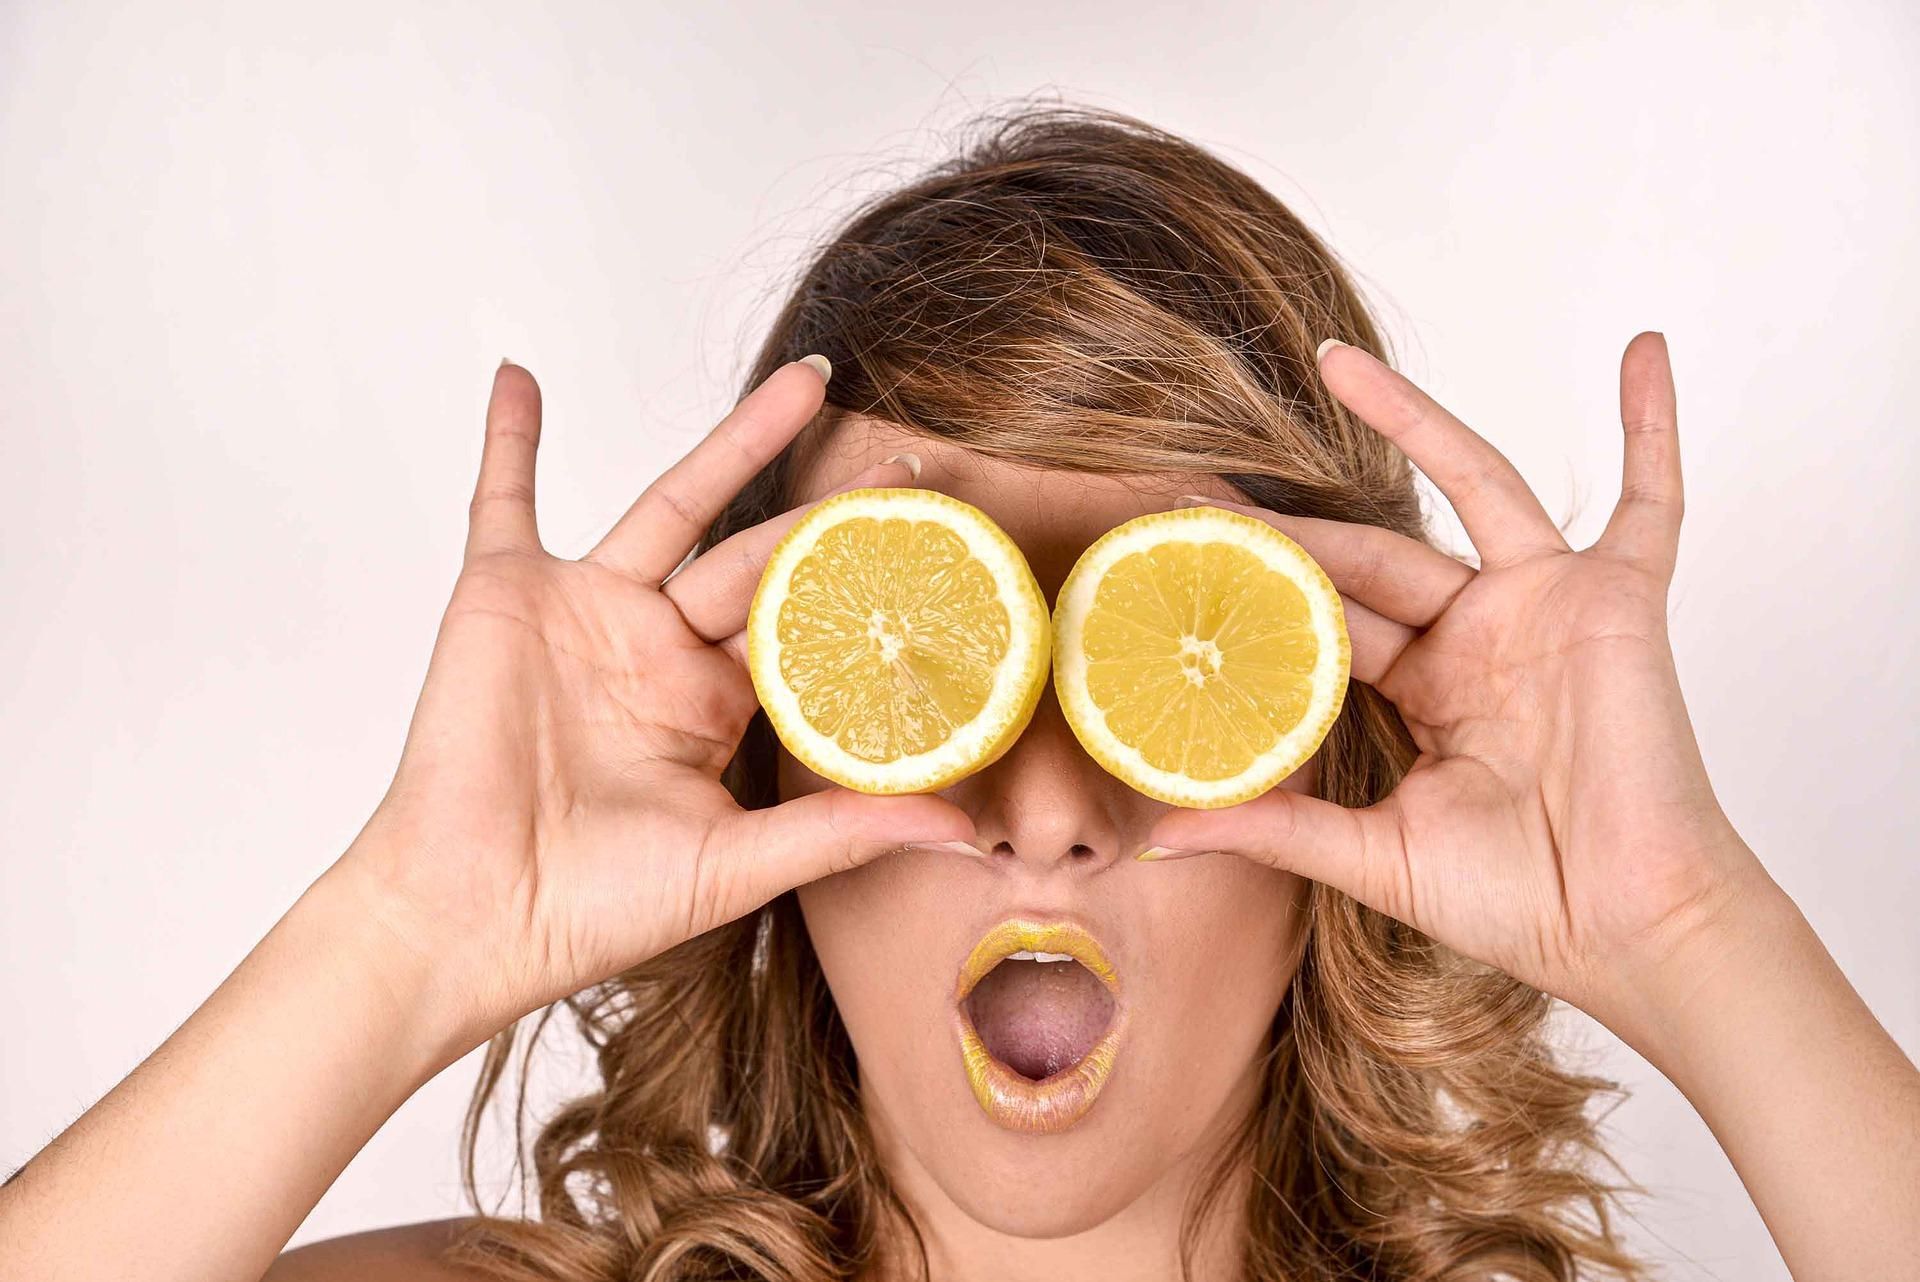 Действенные лайфхаки с лимонами, которые оценят даже скептики
